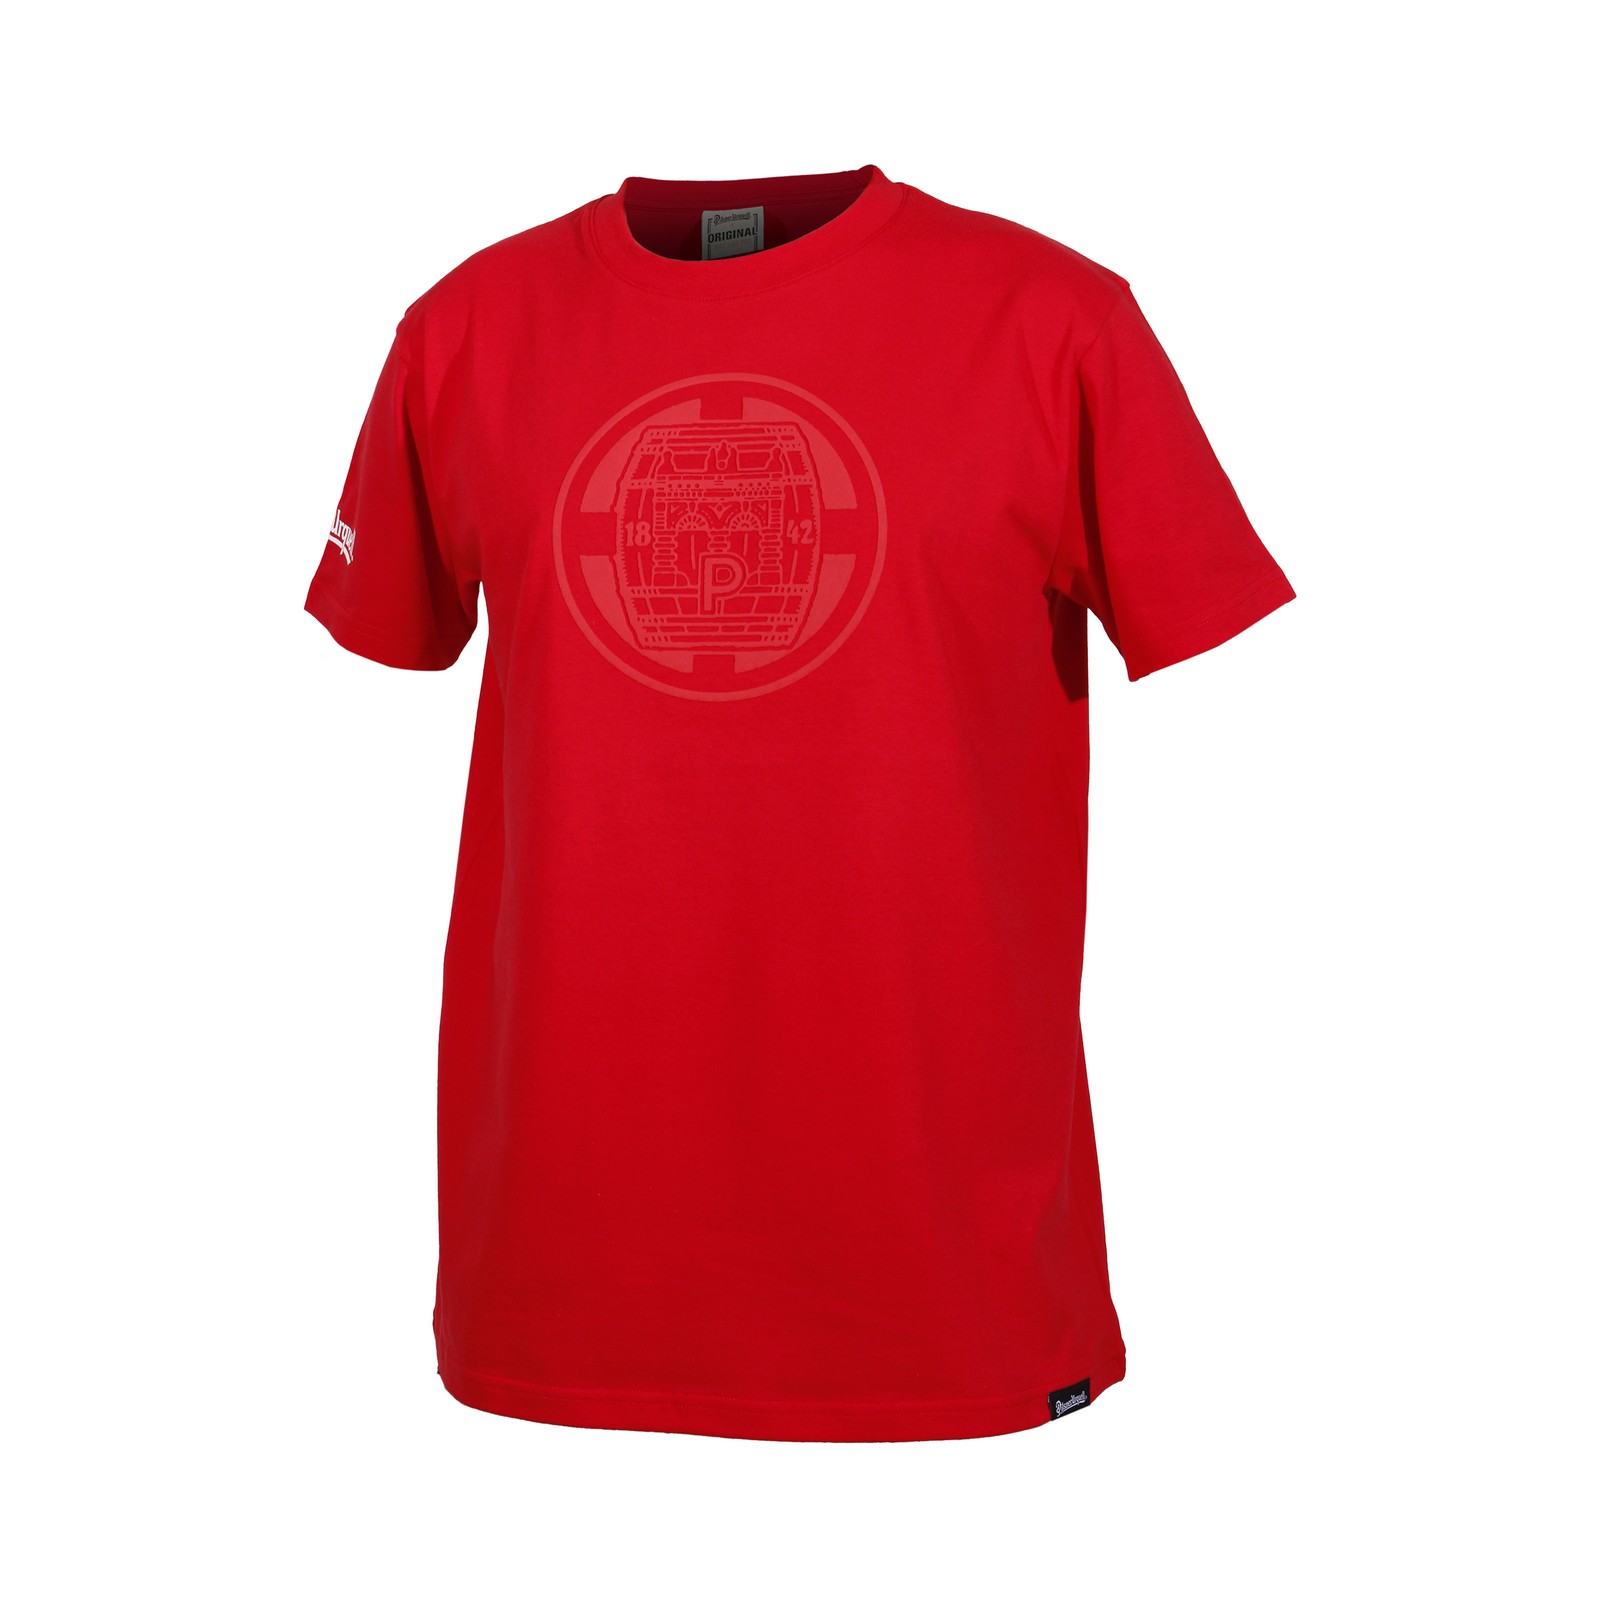 Men's T-shirt Pilsner Urquell barrel red